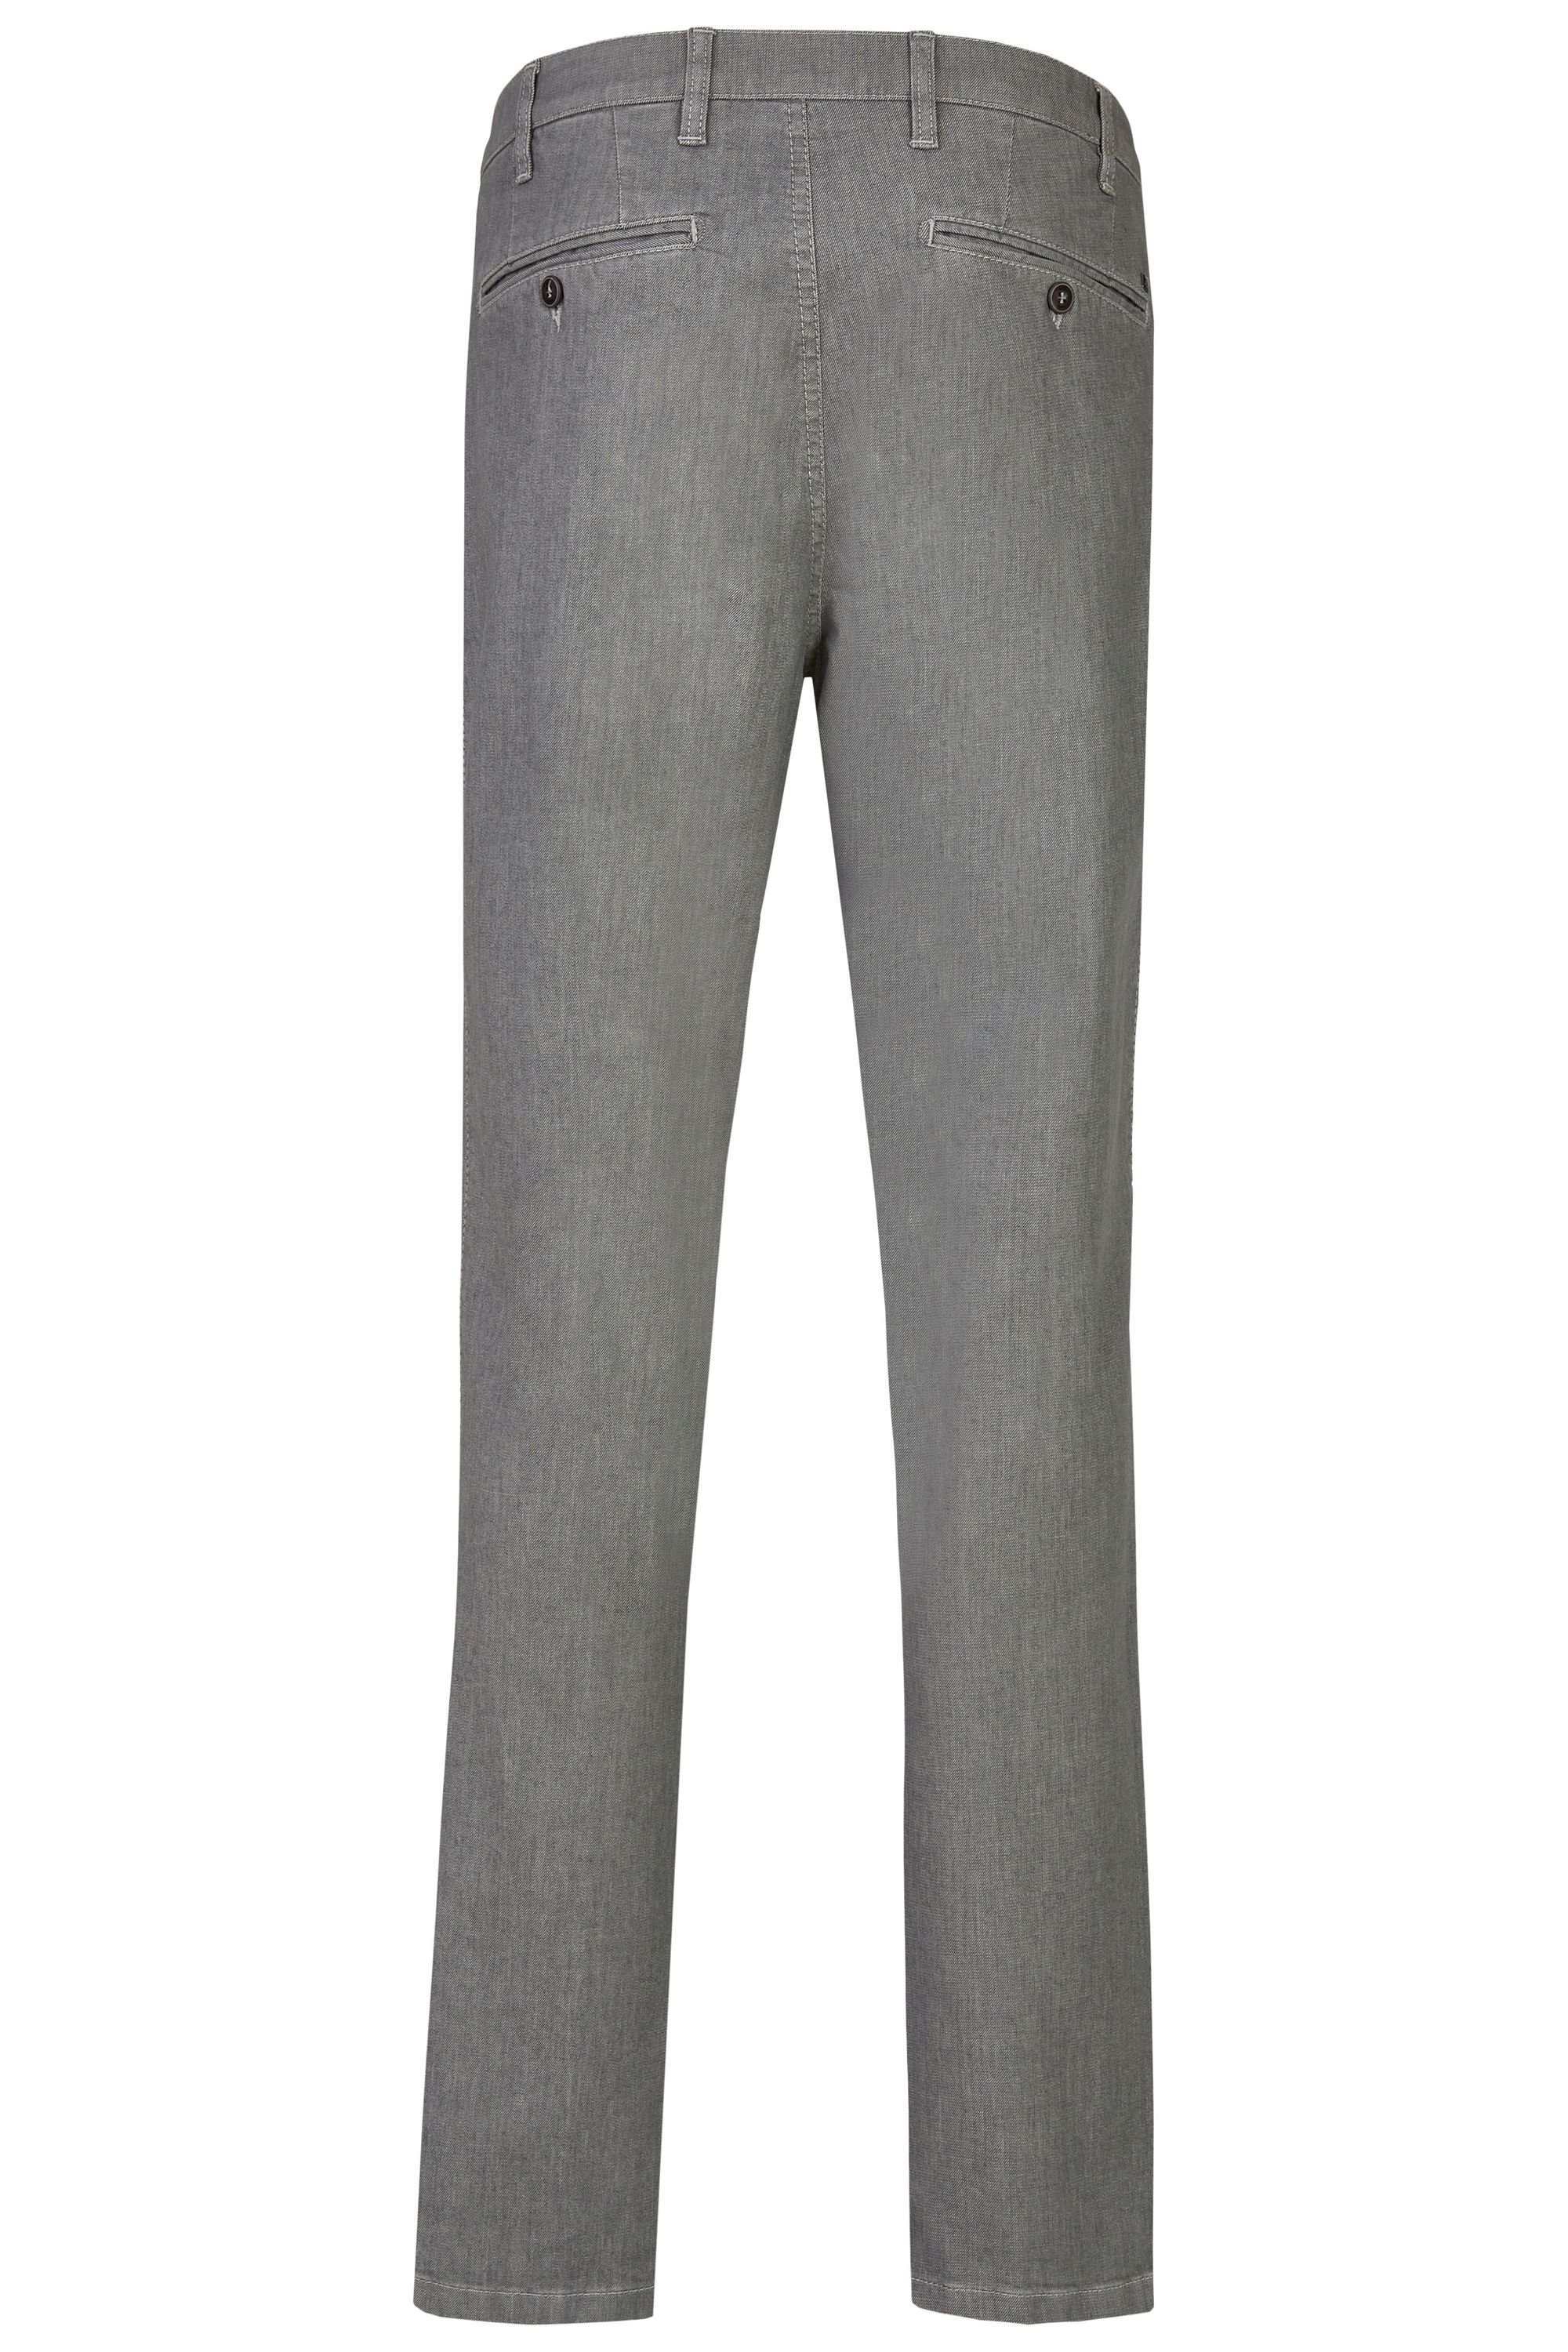 Stretch grey Flex High aus Fit (56) Bequeme Jeans 577 aubi Herren aubi: Hose Perfect Modell Sommer Jeans Baumwolle